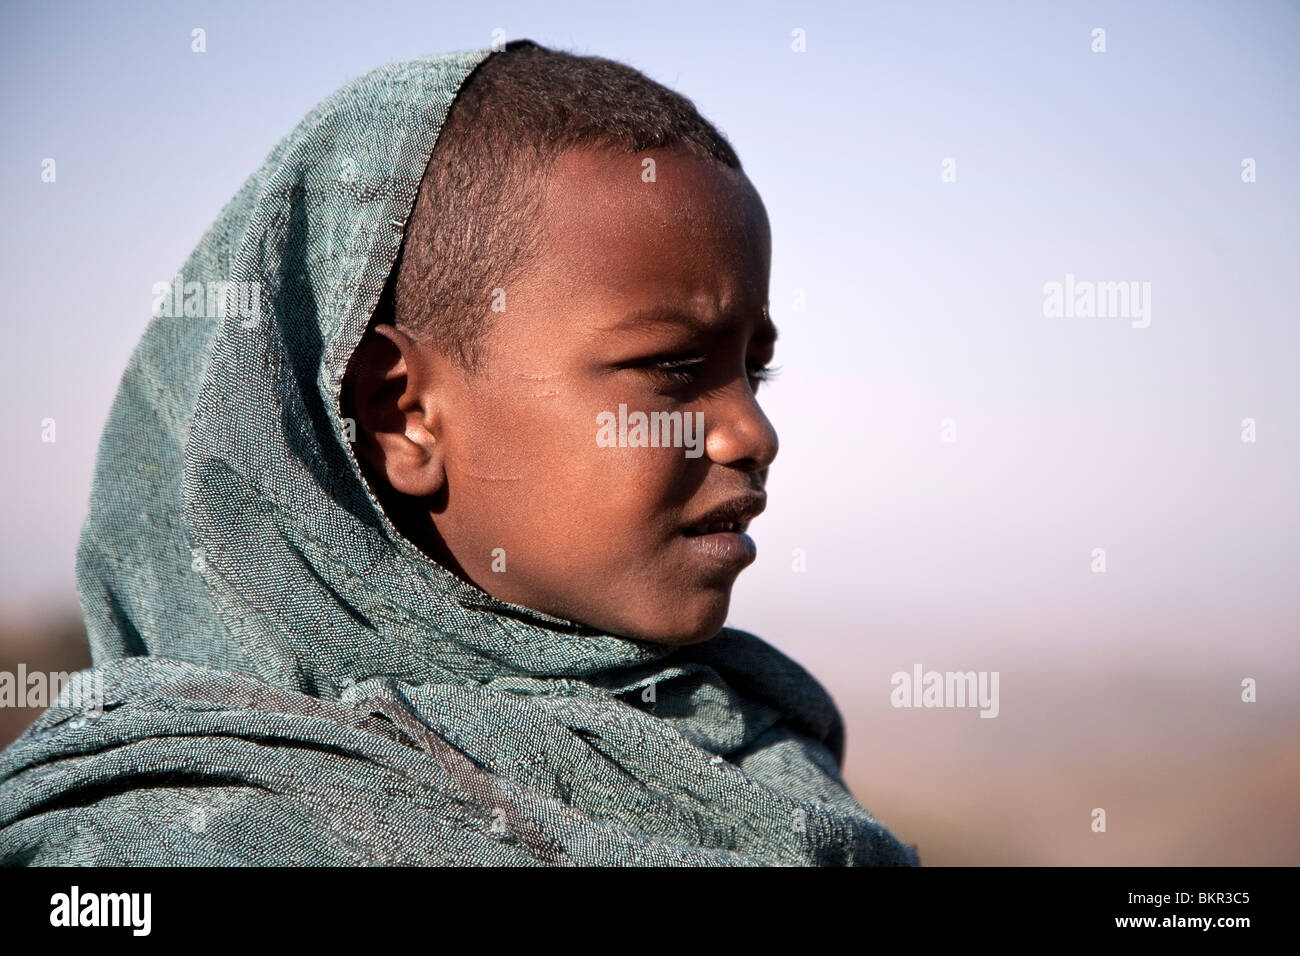 L'Ethiopie, Lalibela. Un jeune garçon avec son châle dimanche. Banque D'Images